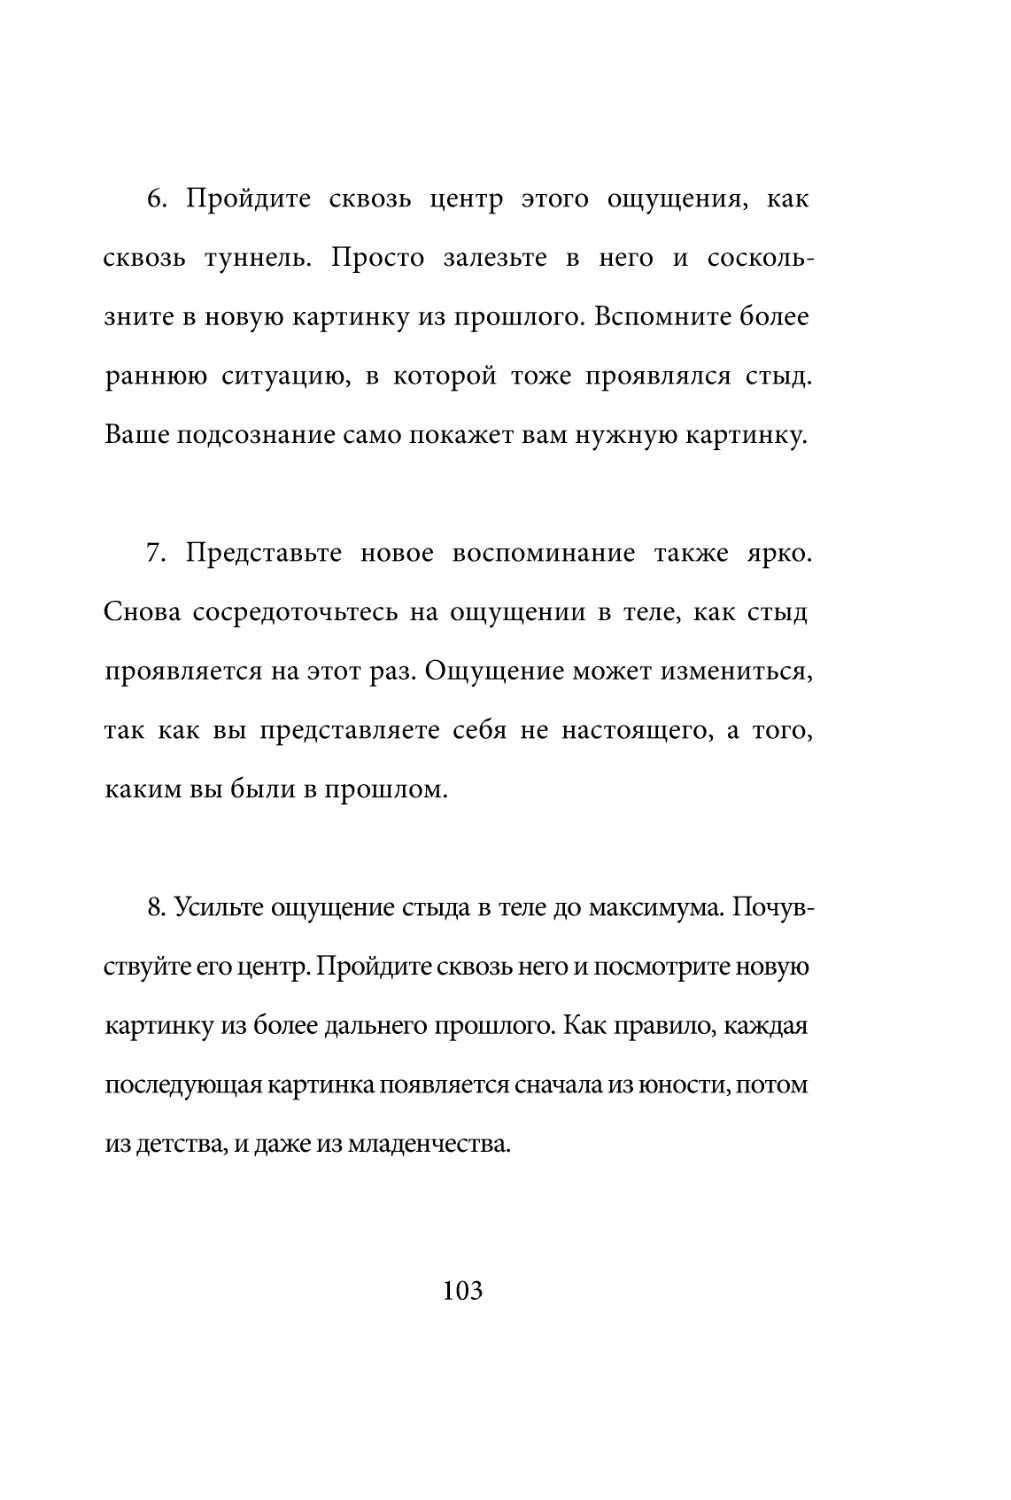 Sergey_Filippov_Dnevnik_samorazvitia_Evolyutsia_Vnutrennego_Sostoyania_103.pdf (p.103)